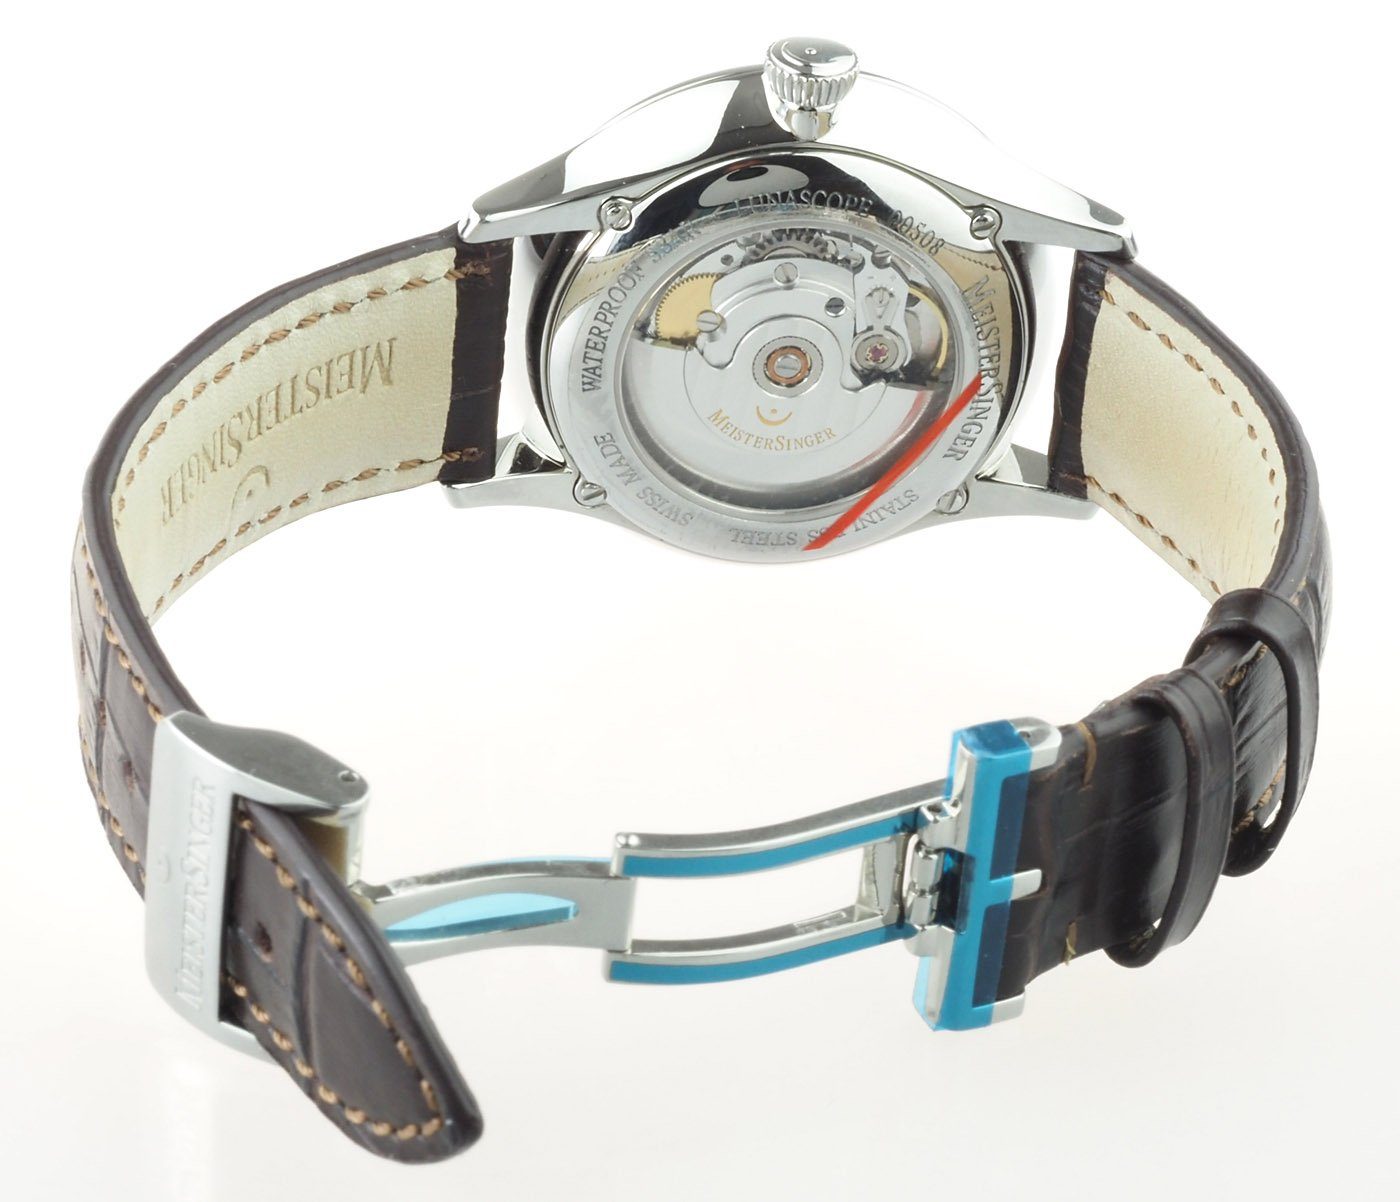 Automatikuhr Lunascope Automatik Herren Uhr LS901 Meistersinger Einzeiger Uhr, Mondphasenanzeige